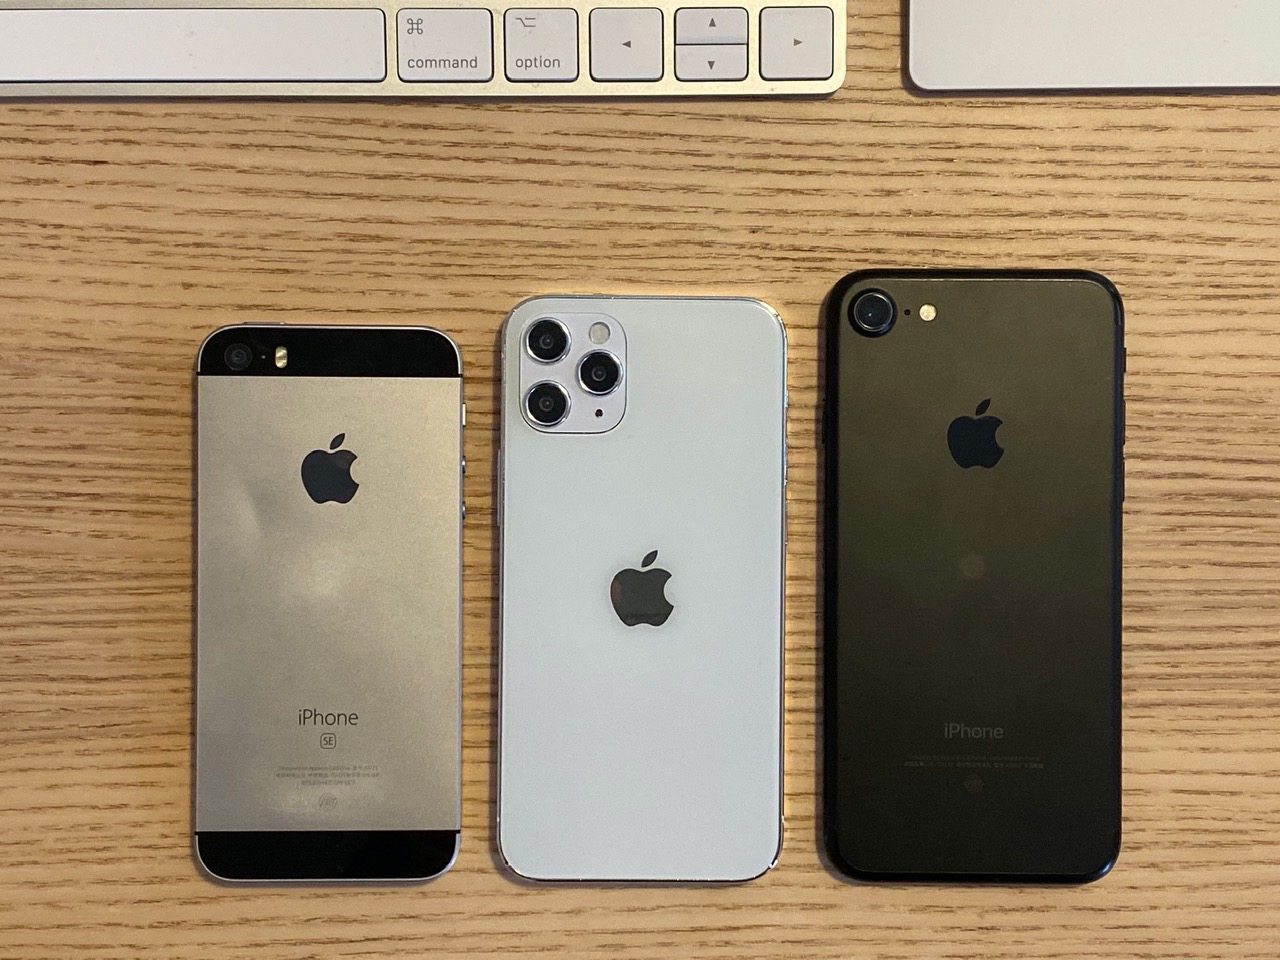 ｢iPhone 12｣は｢iPhone SE (第1世代)｣と｢iPhone 7｣の中間サイズか − ダミーモデルの大きさ比較画像公開